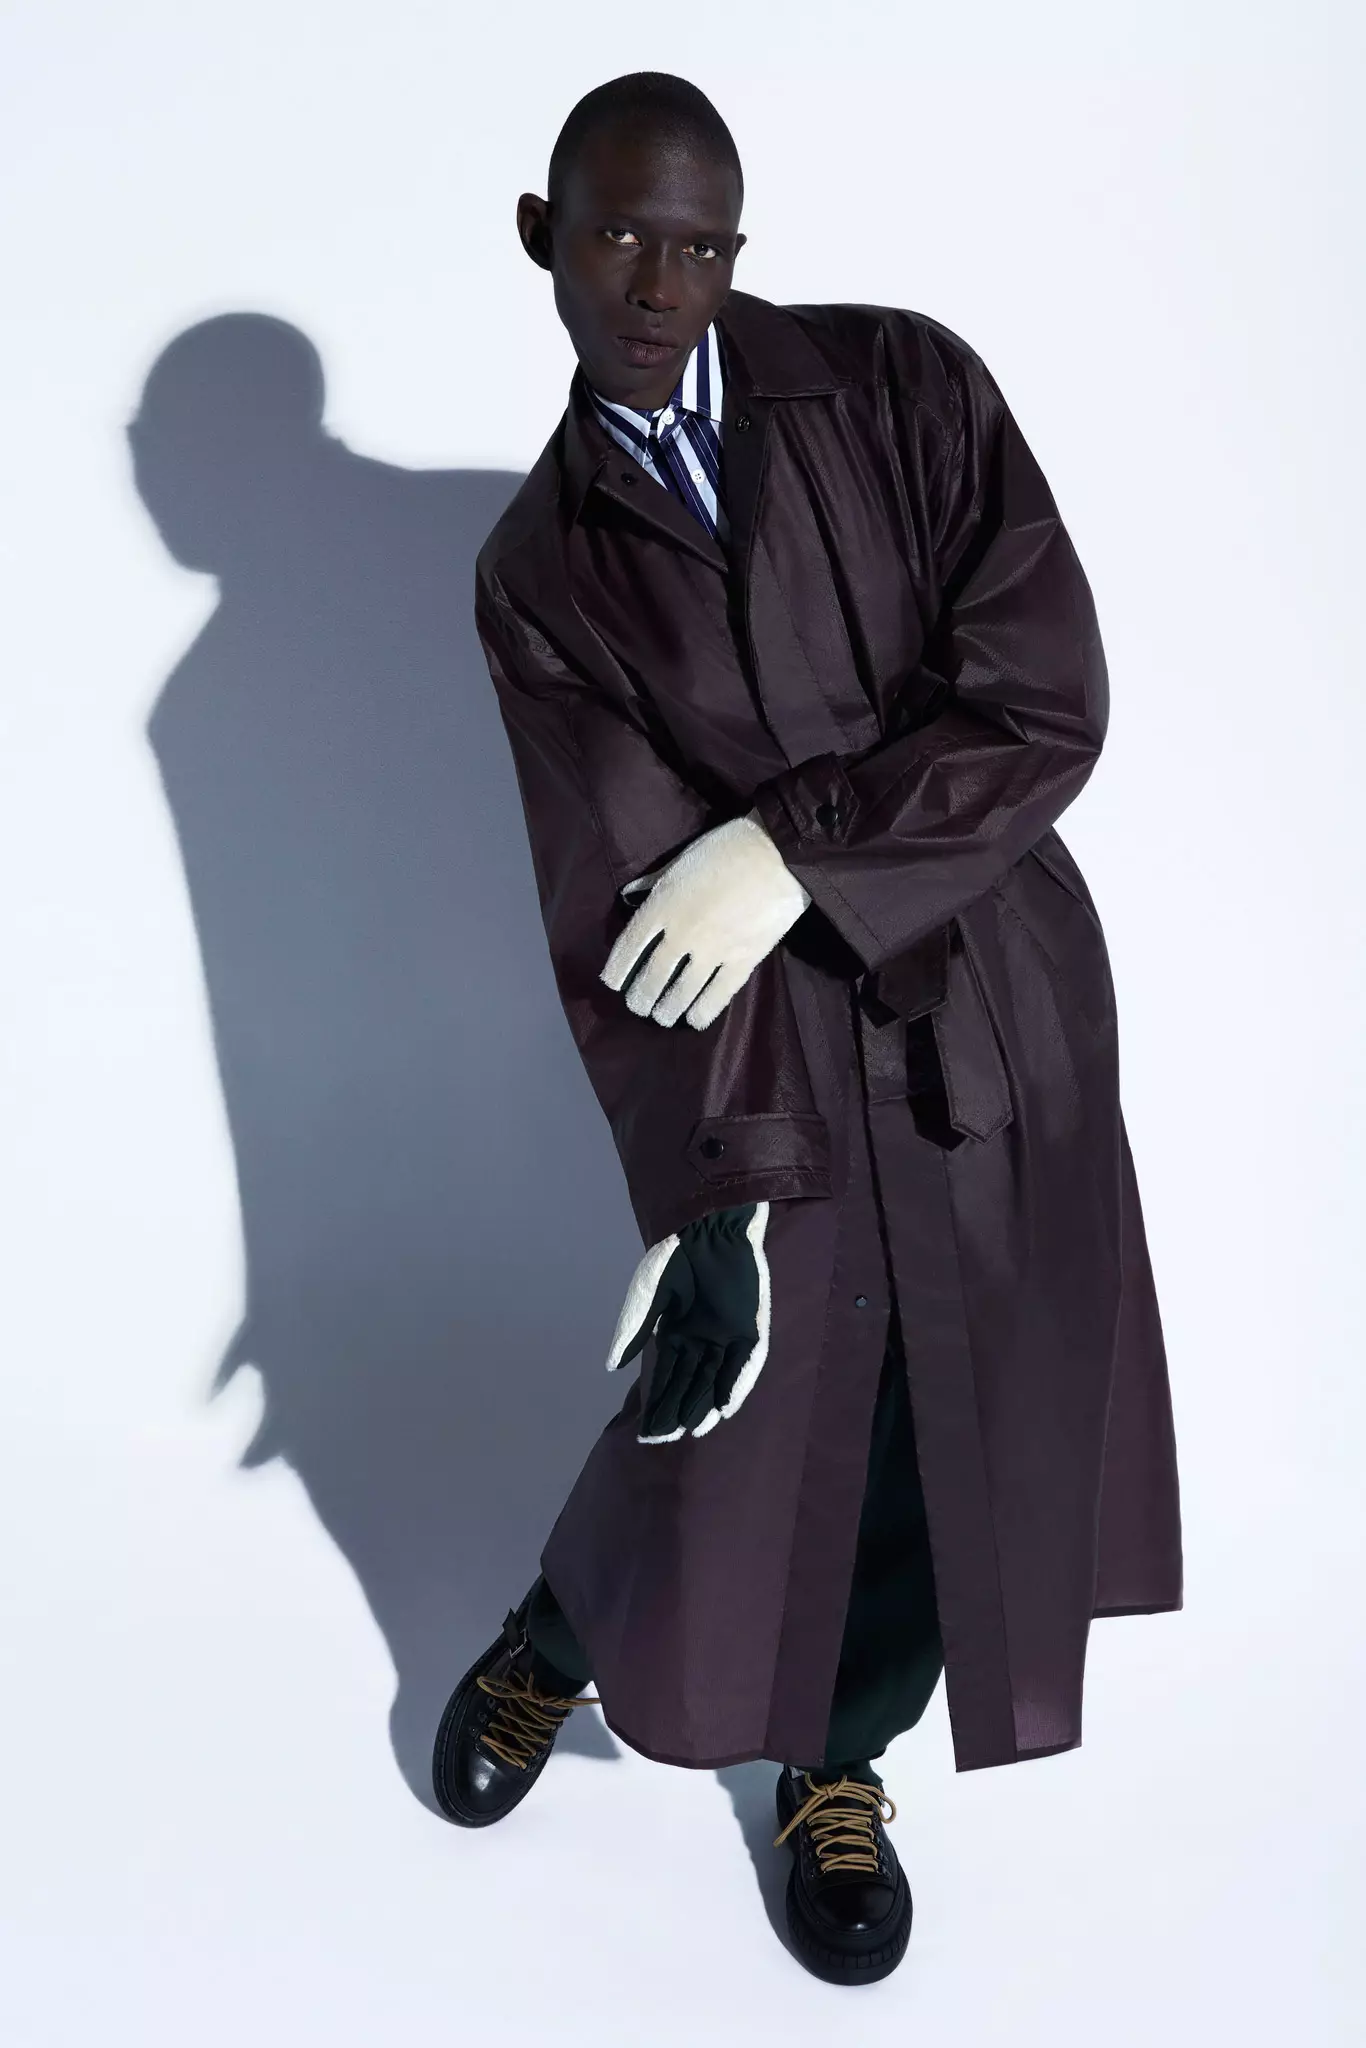 隆重推出 Acne Studios 2015 秋冬男装系列。 “这个想法是给男人什么让他们感到舒适和安全。英式剪裁、驴夹克、足球。然后是运动紧身裤的新轮廓：我想探索什么是阳刚之气，并符合我们所理解的男士风格。” – 创意总监 Jonny Johansson 查看完整系列图片：http://bit.ly/acnestudios-collections